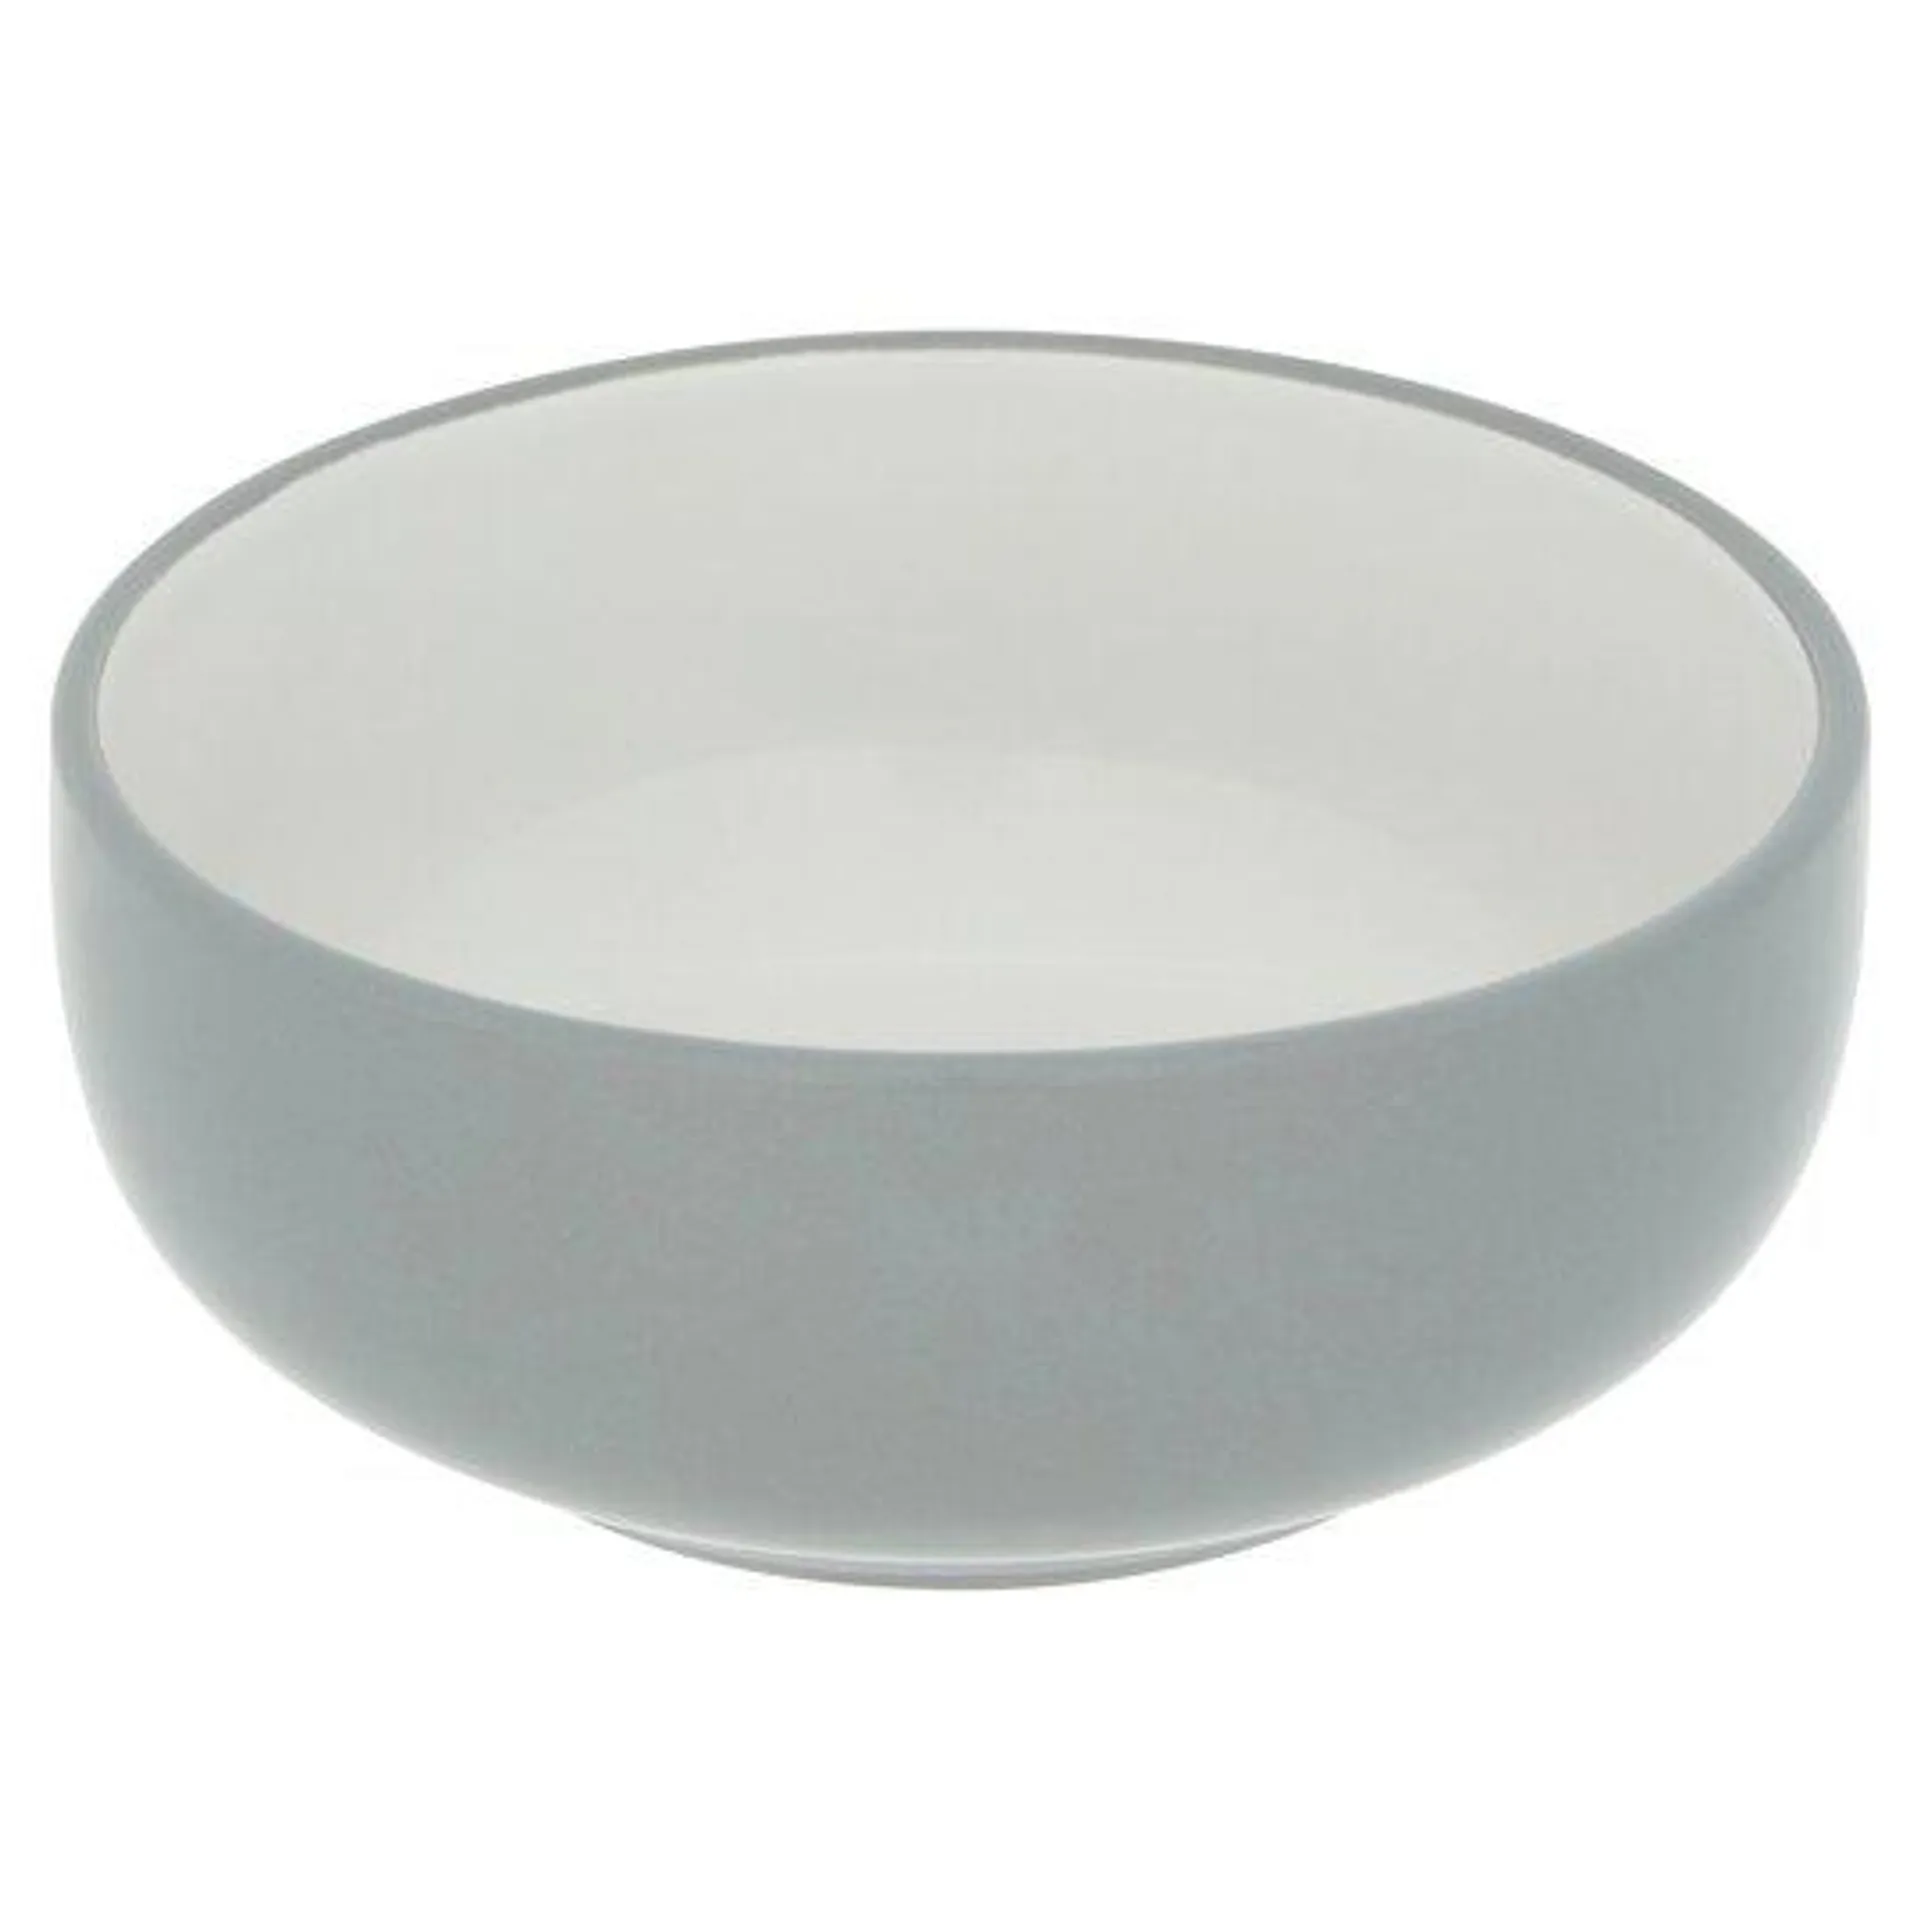 Tesco Aura Cereal Bowl Grey